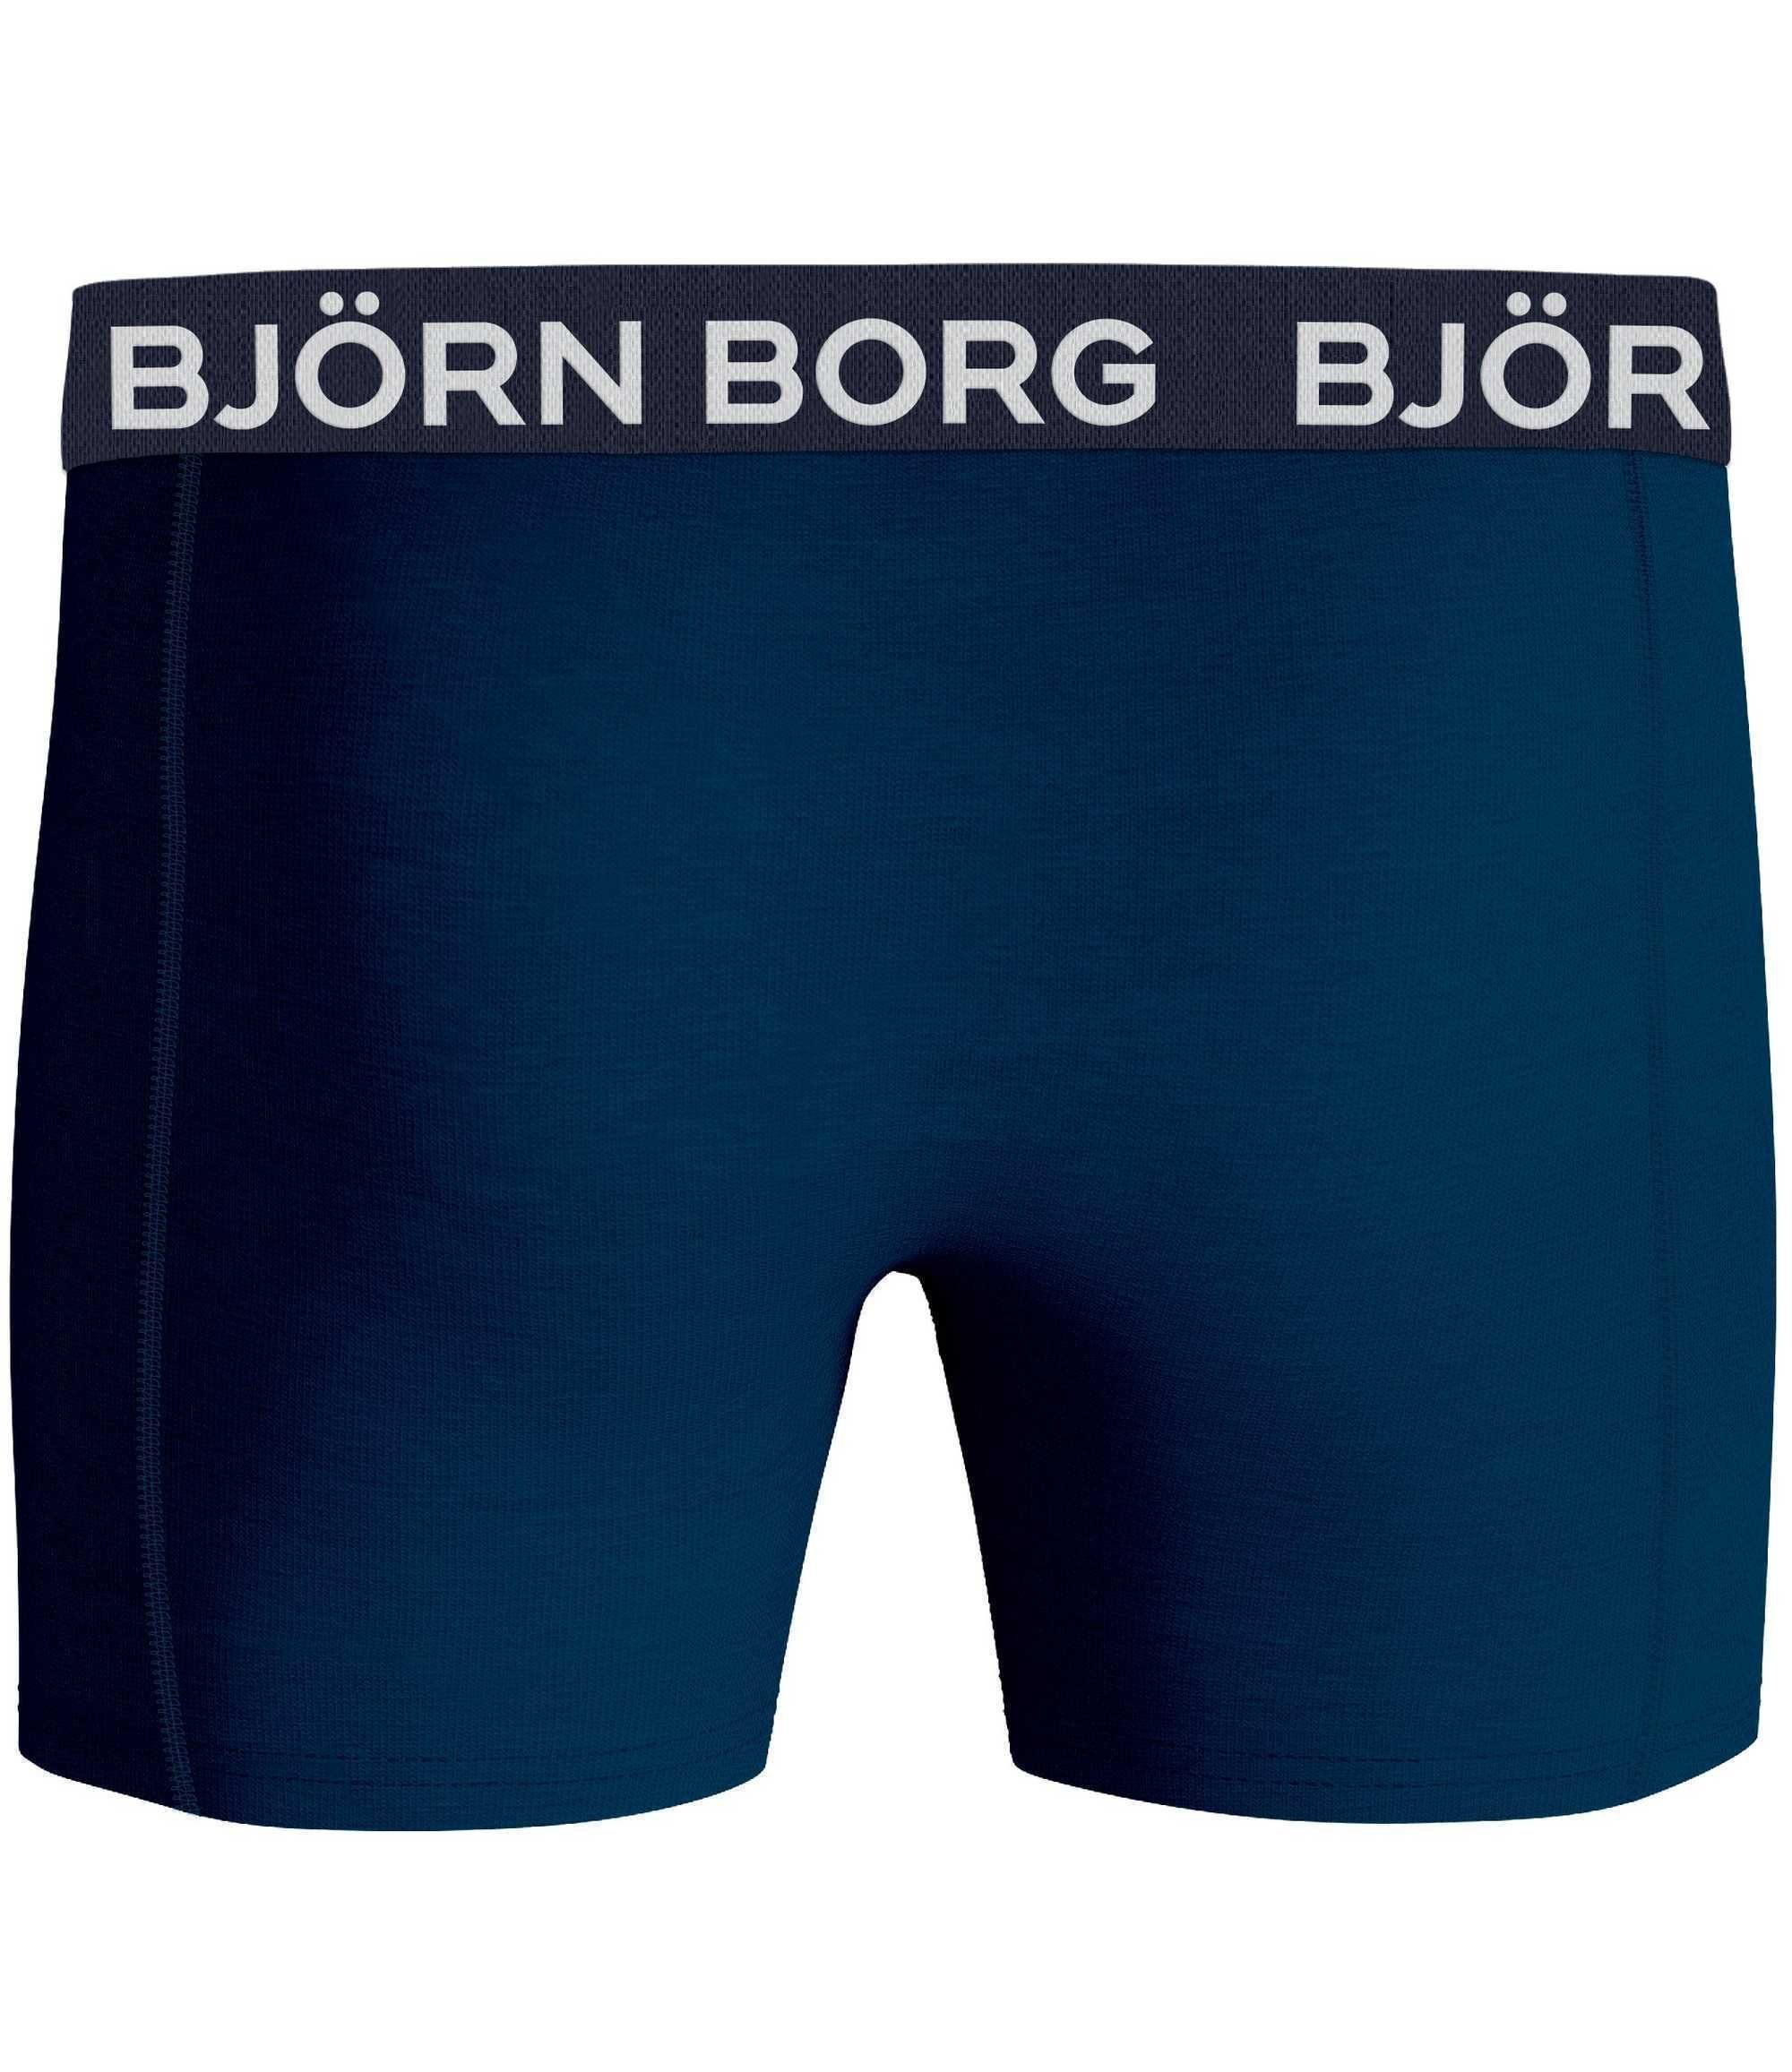 Herren Unterwäsche 5er Borg Björn Boxer - Hellblau/Dunkelblau/Orange/Dunkelgrau Pack Boxershorts,